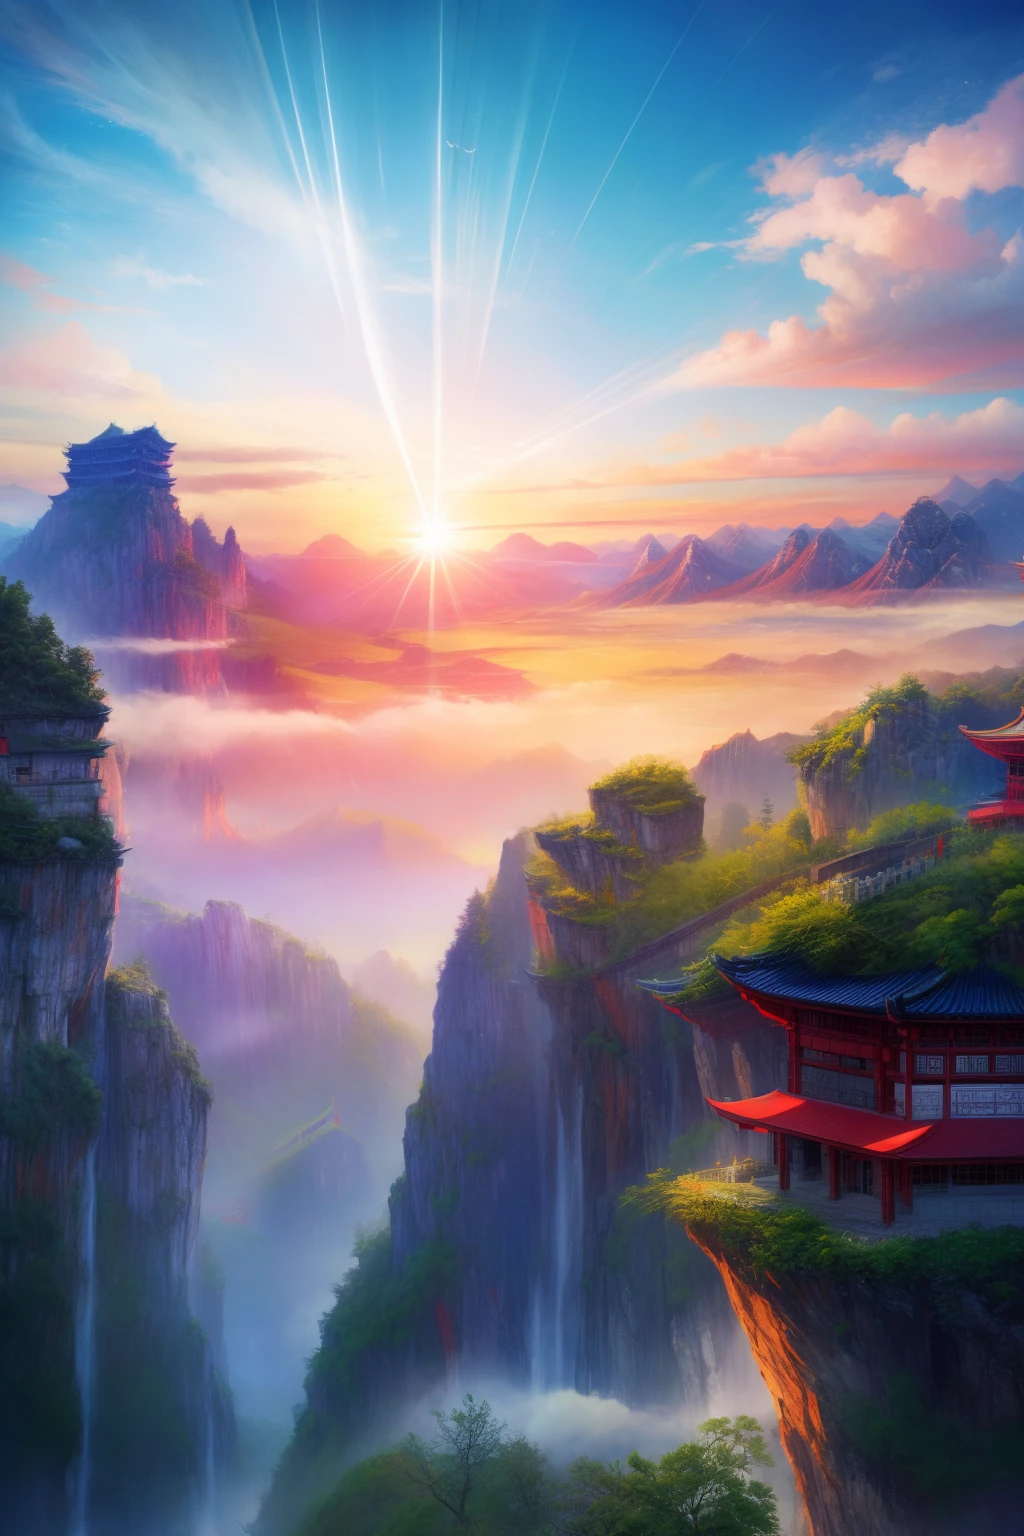 يوجد مبنى أحمر صغير على الجبل, مؤلف：تشنغ جياسوي, المناظر الطبيعية الصينية, مؤلف：يوان جيانغ, صورة المناظر الطبيعية مذهلة, تشانغجياجيه في الصباح الباكر, مؤلف：ليو هايسو, بقلم ريموند هان, الجبال لالتقاط الأنفاس, مؤلف：شيا يونغ, الجبال العائمة, جميلة بشكل لا يصدق, بواسطة رن شيونغ, حديقة غابة تشانغجياجيه الوطنية